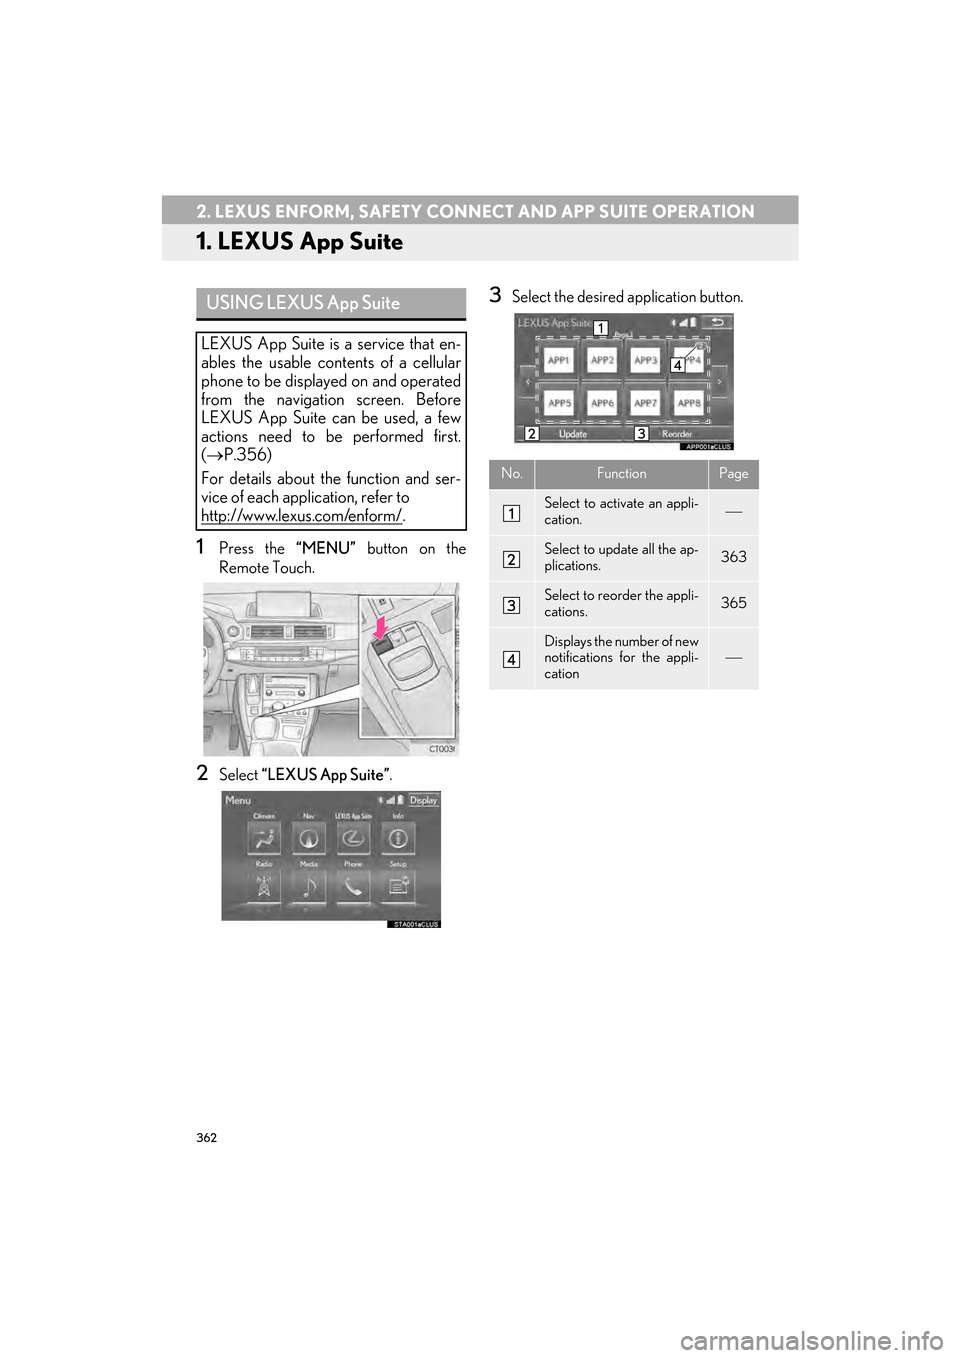 Lexus CT200h 2015  Navigation Manual (in English) 362
CT200h_Navi_OM76146U_(U)14.06.17     09:48
2. LEXUS ENFORM, SAFETY CONNECT AND APP SUITE OPERATION
1. LEXUS App Suite
1Press the “MENU” button on the
Remote Touch.
2Select  “LEXUS App Suite�